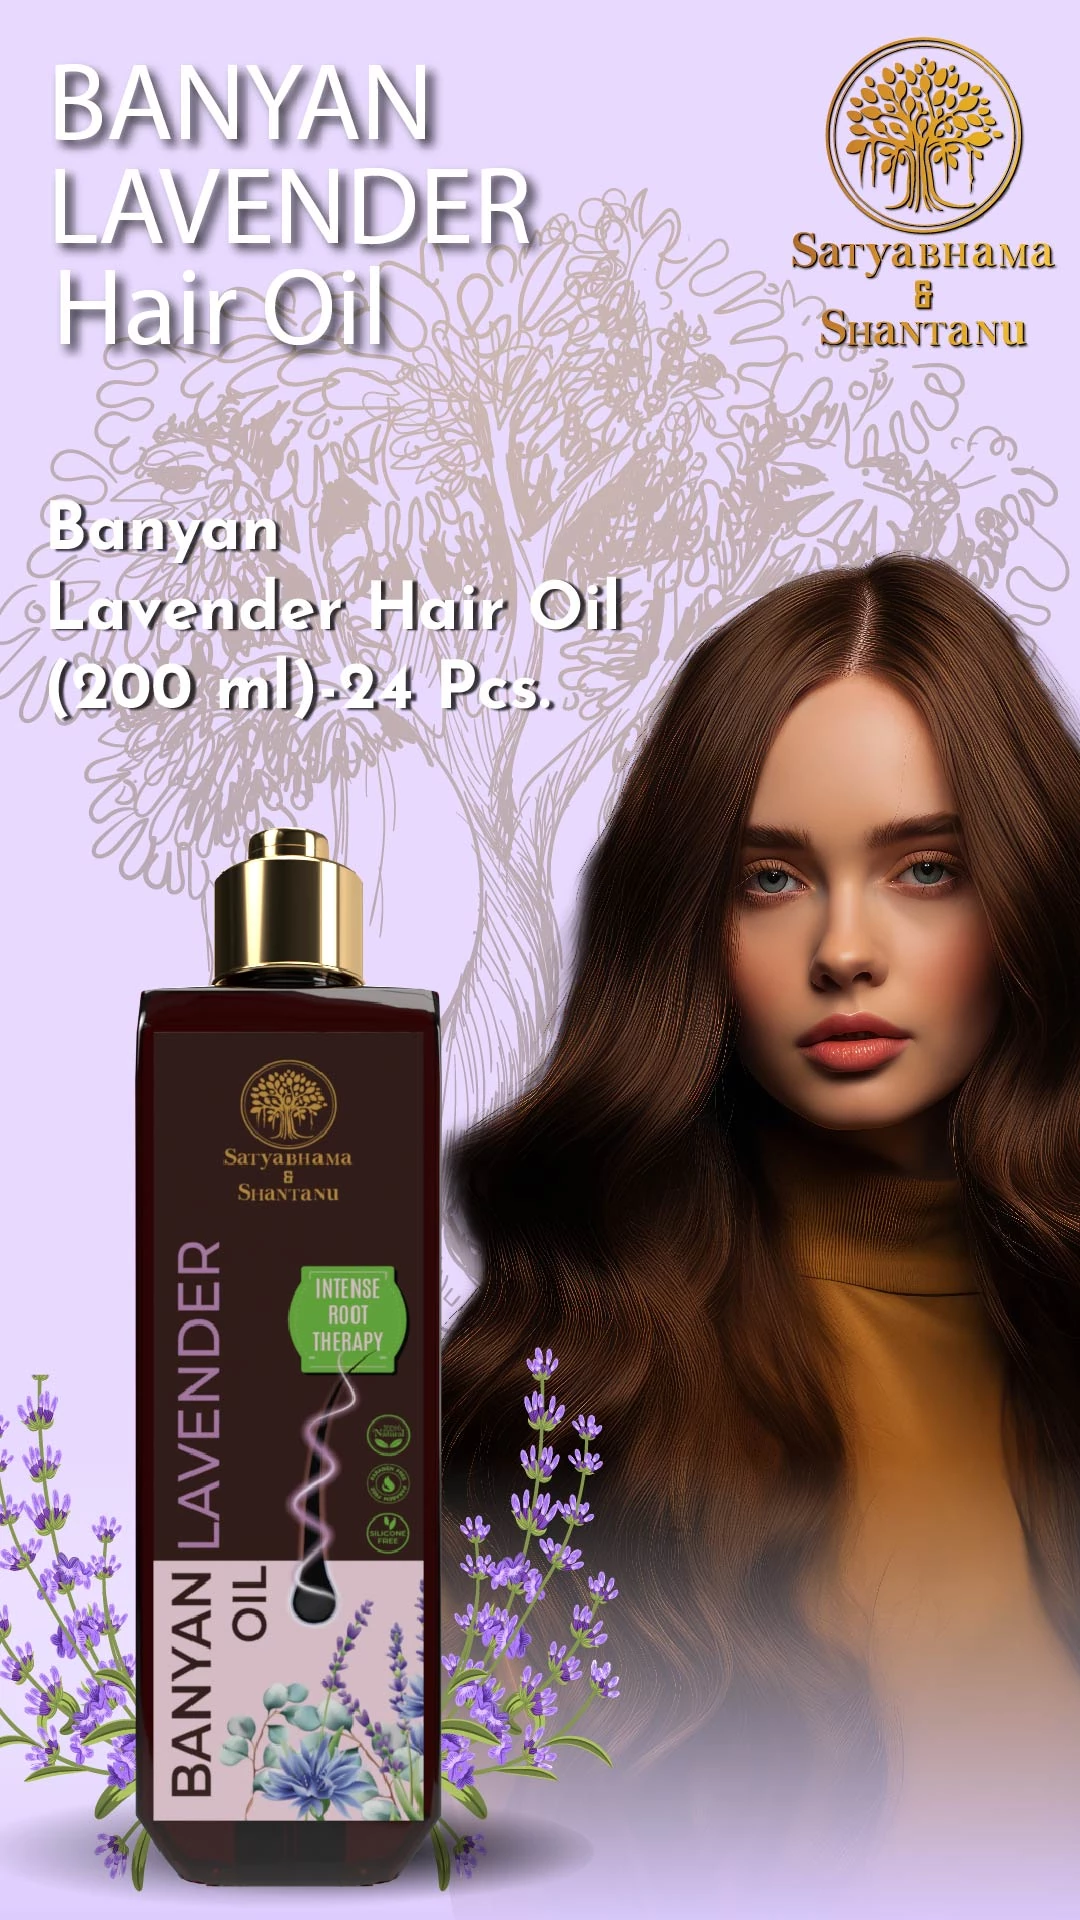 RBV B2B Banyan Lavender Hair Oil (200 ml)-24 Pcs.